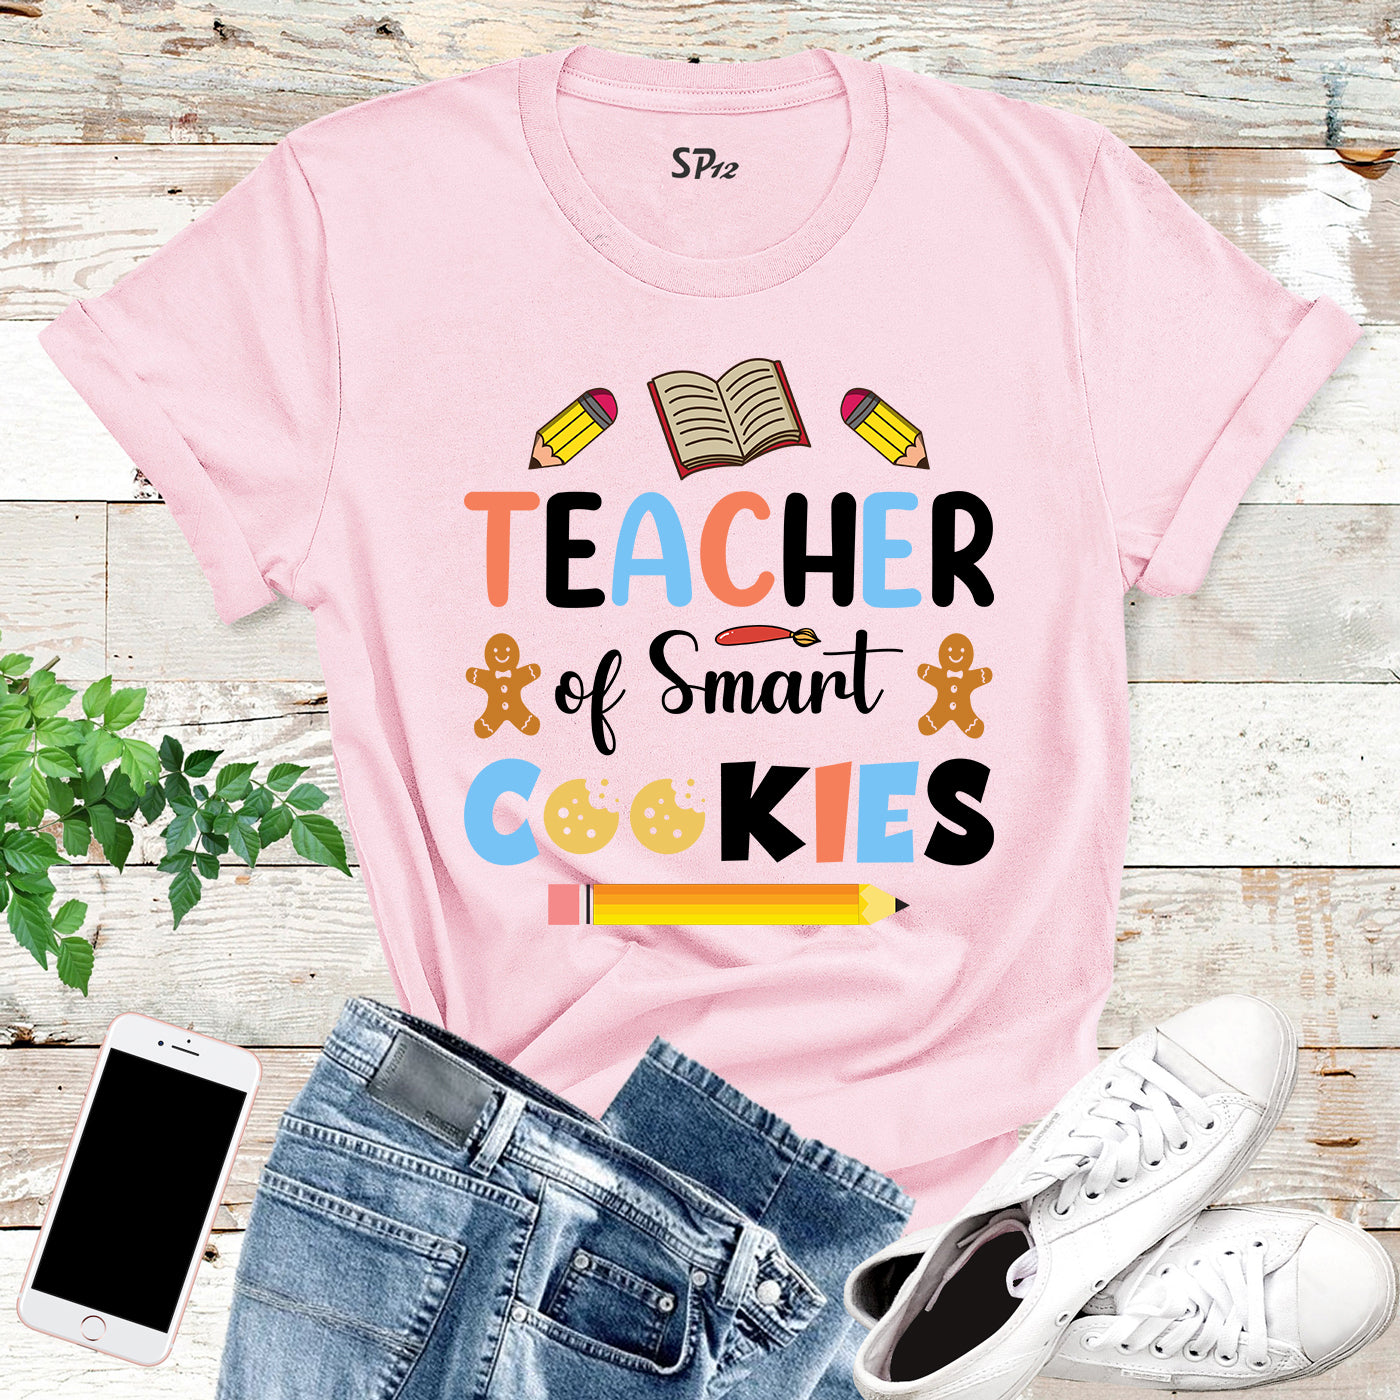 Teacher of Smart Cookies Christmas T Shirt